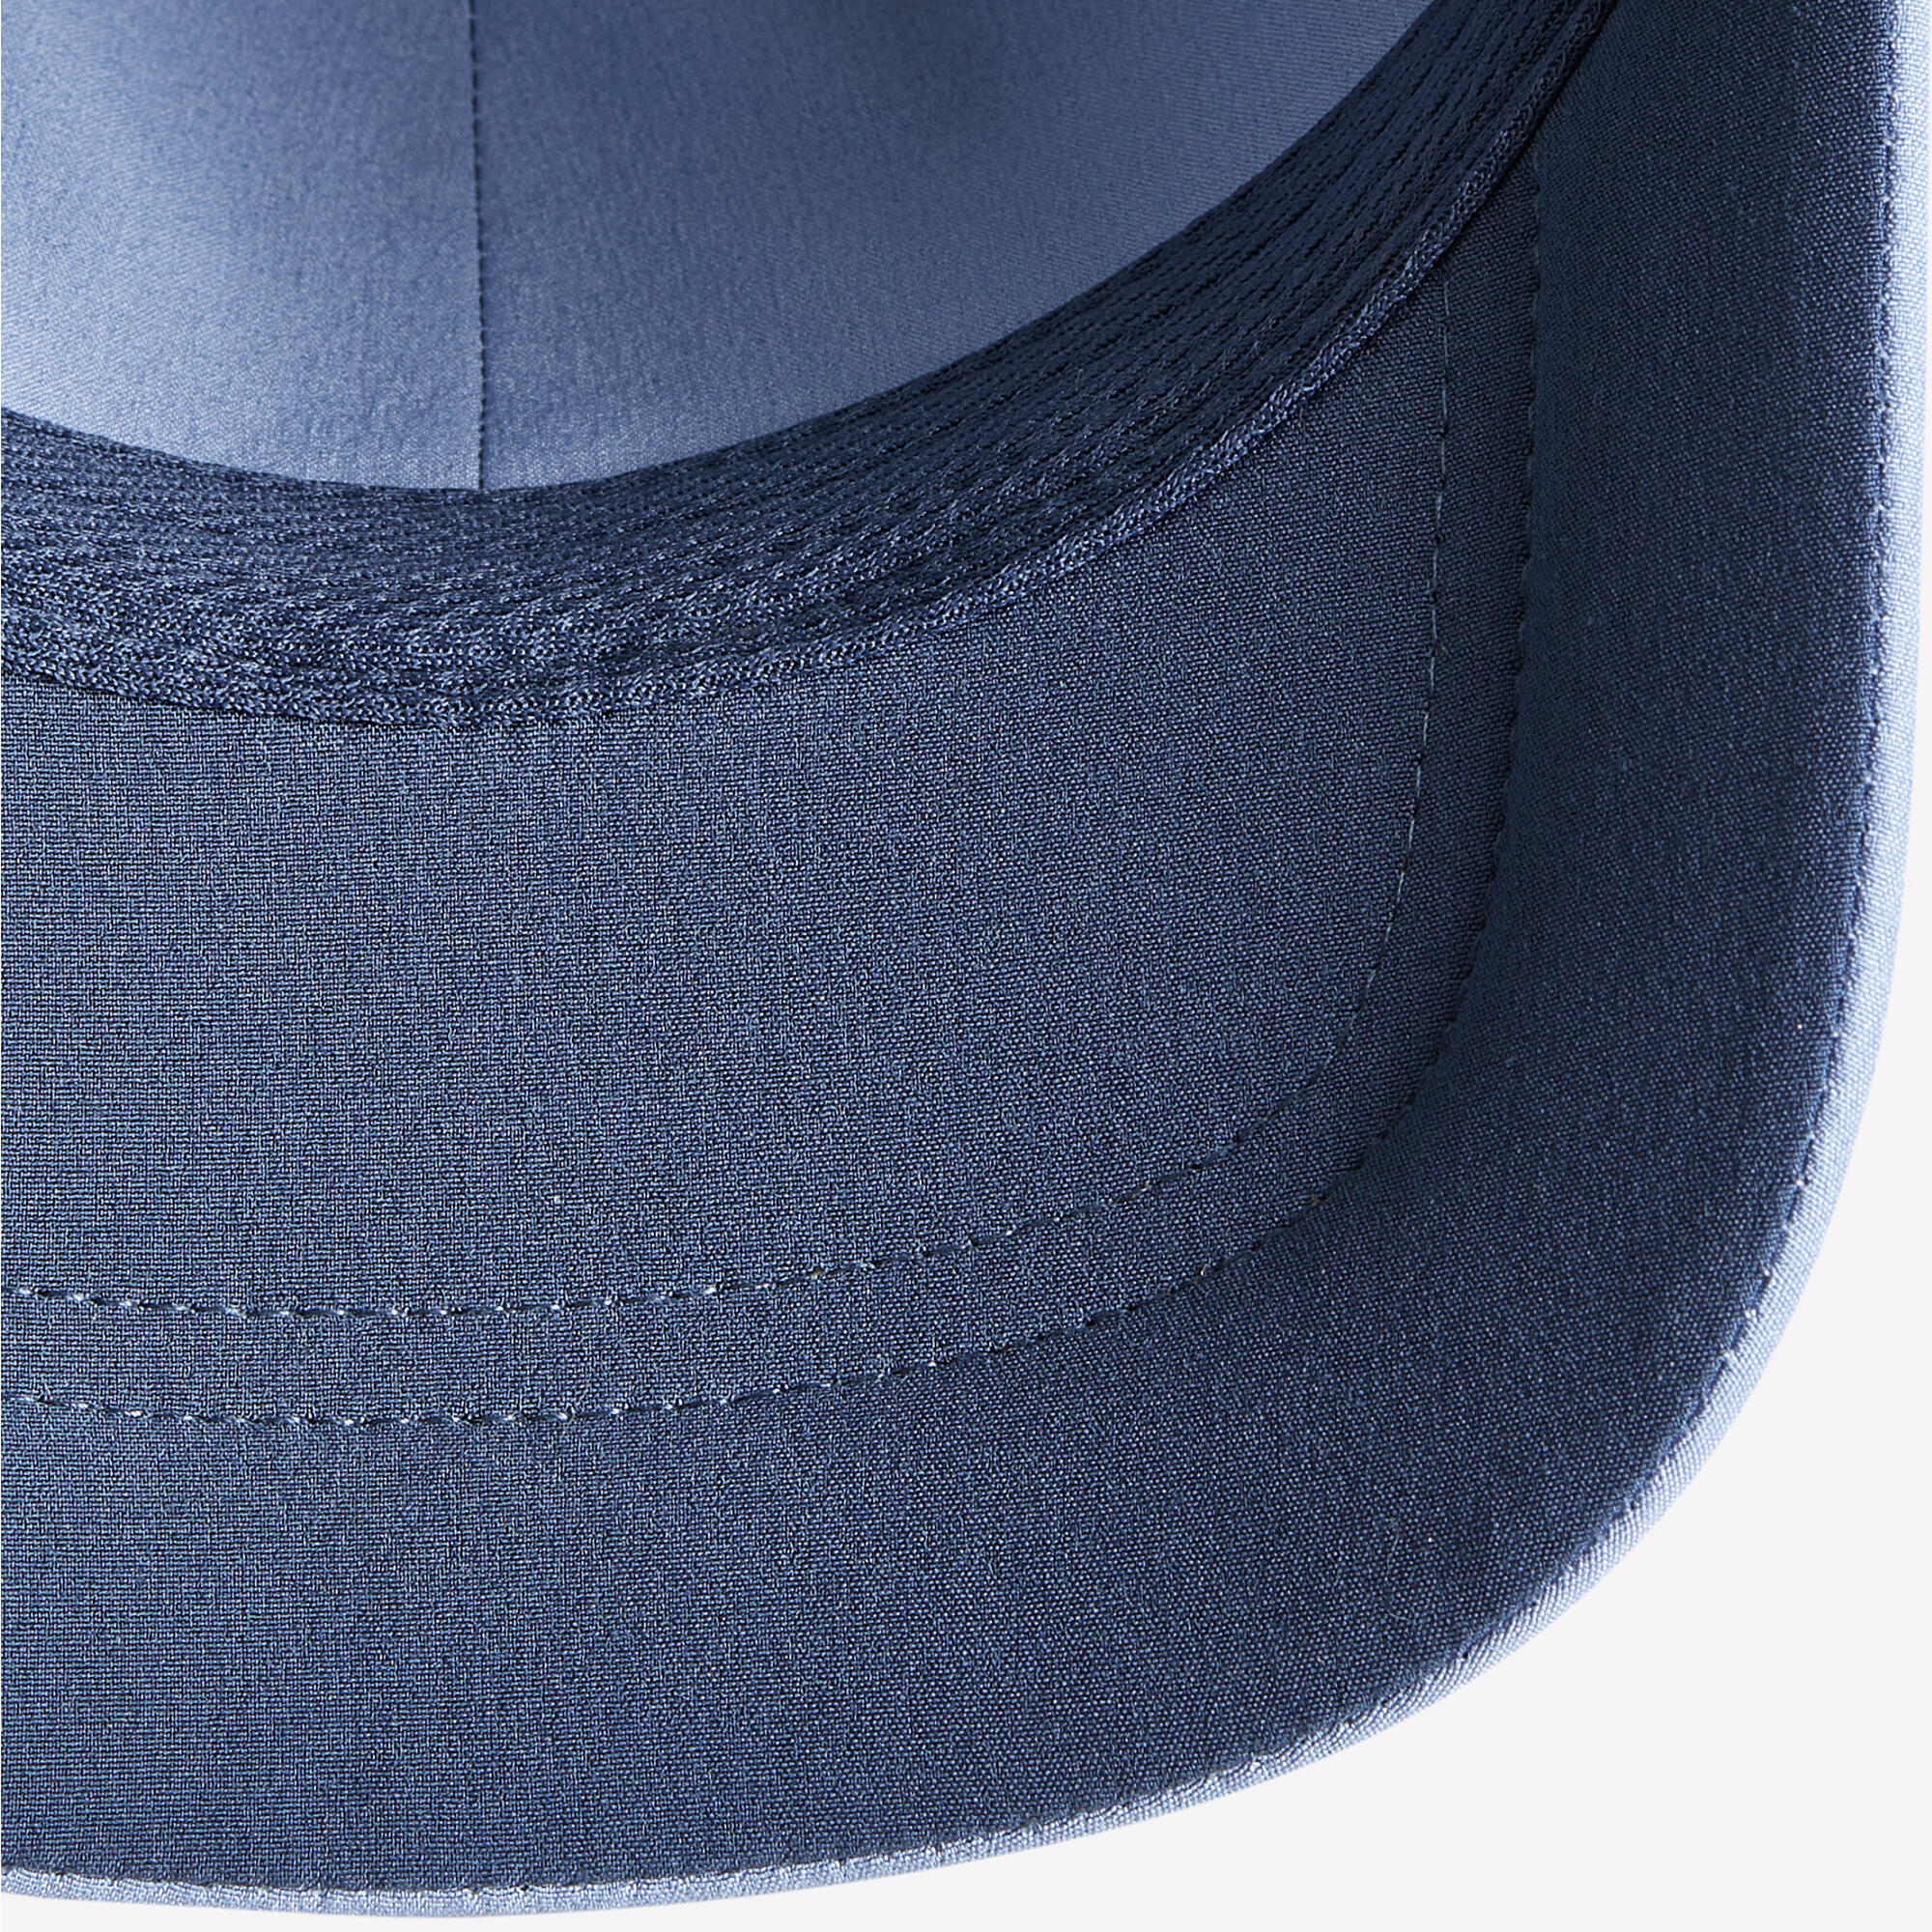 Tennis Cap Size 58 TC 900 - Blue 2/4